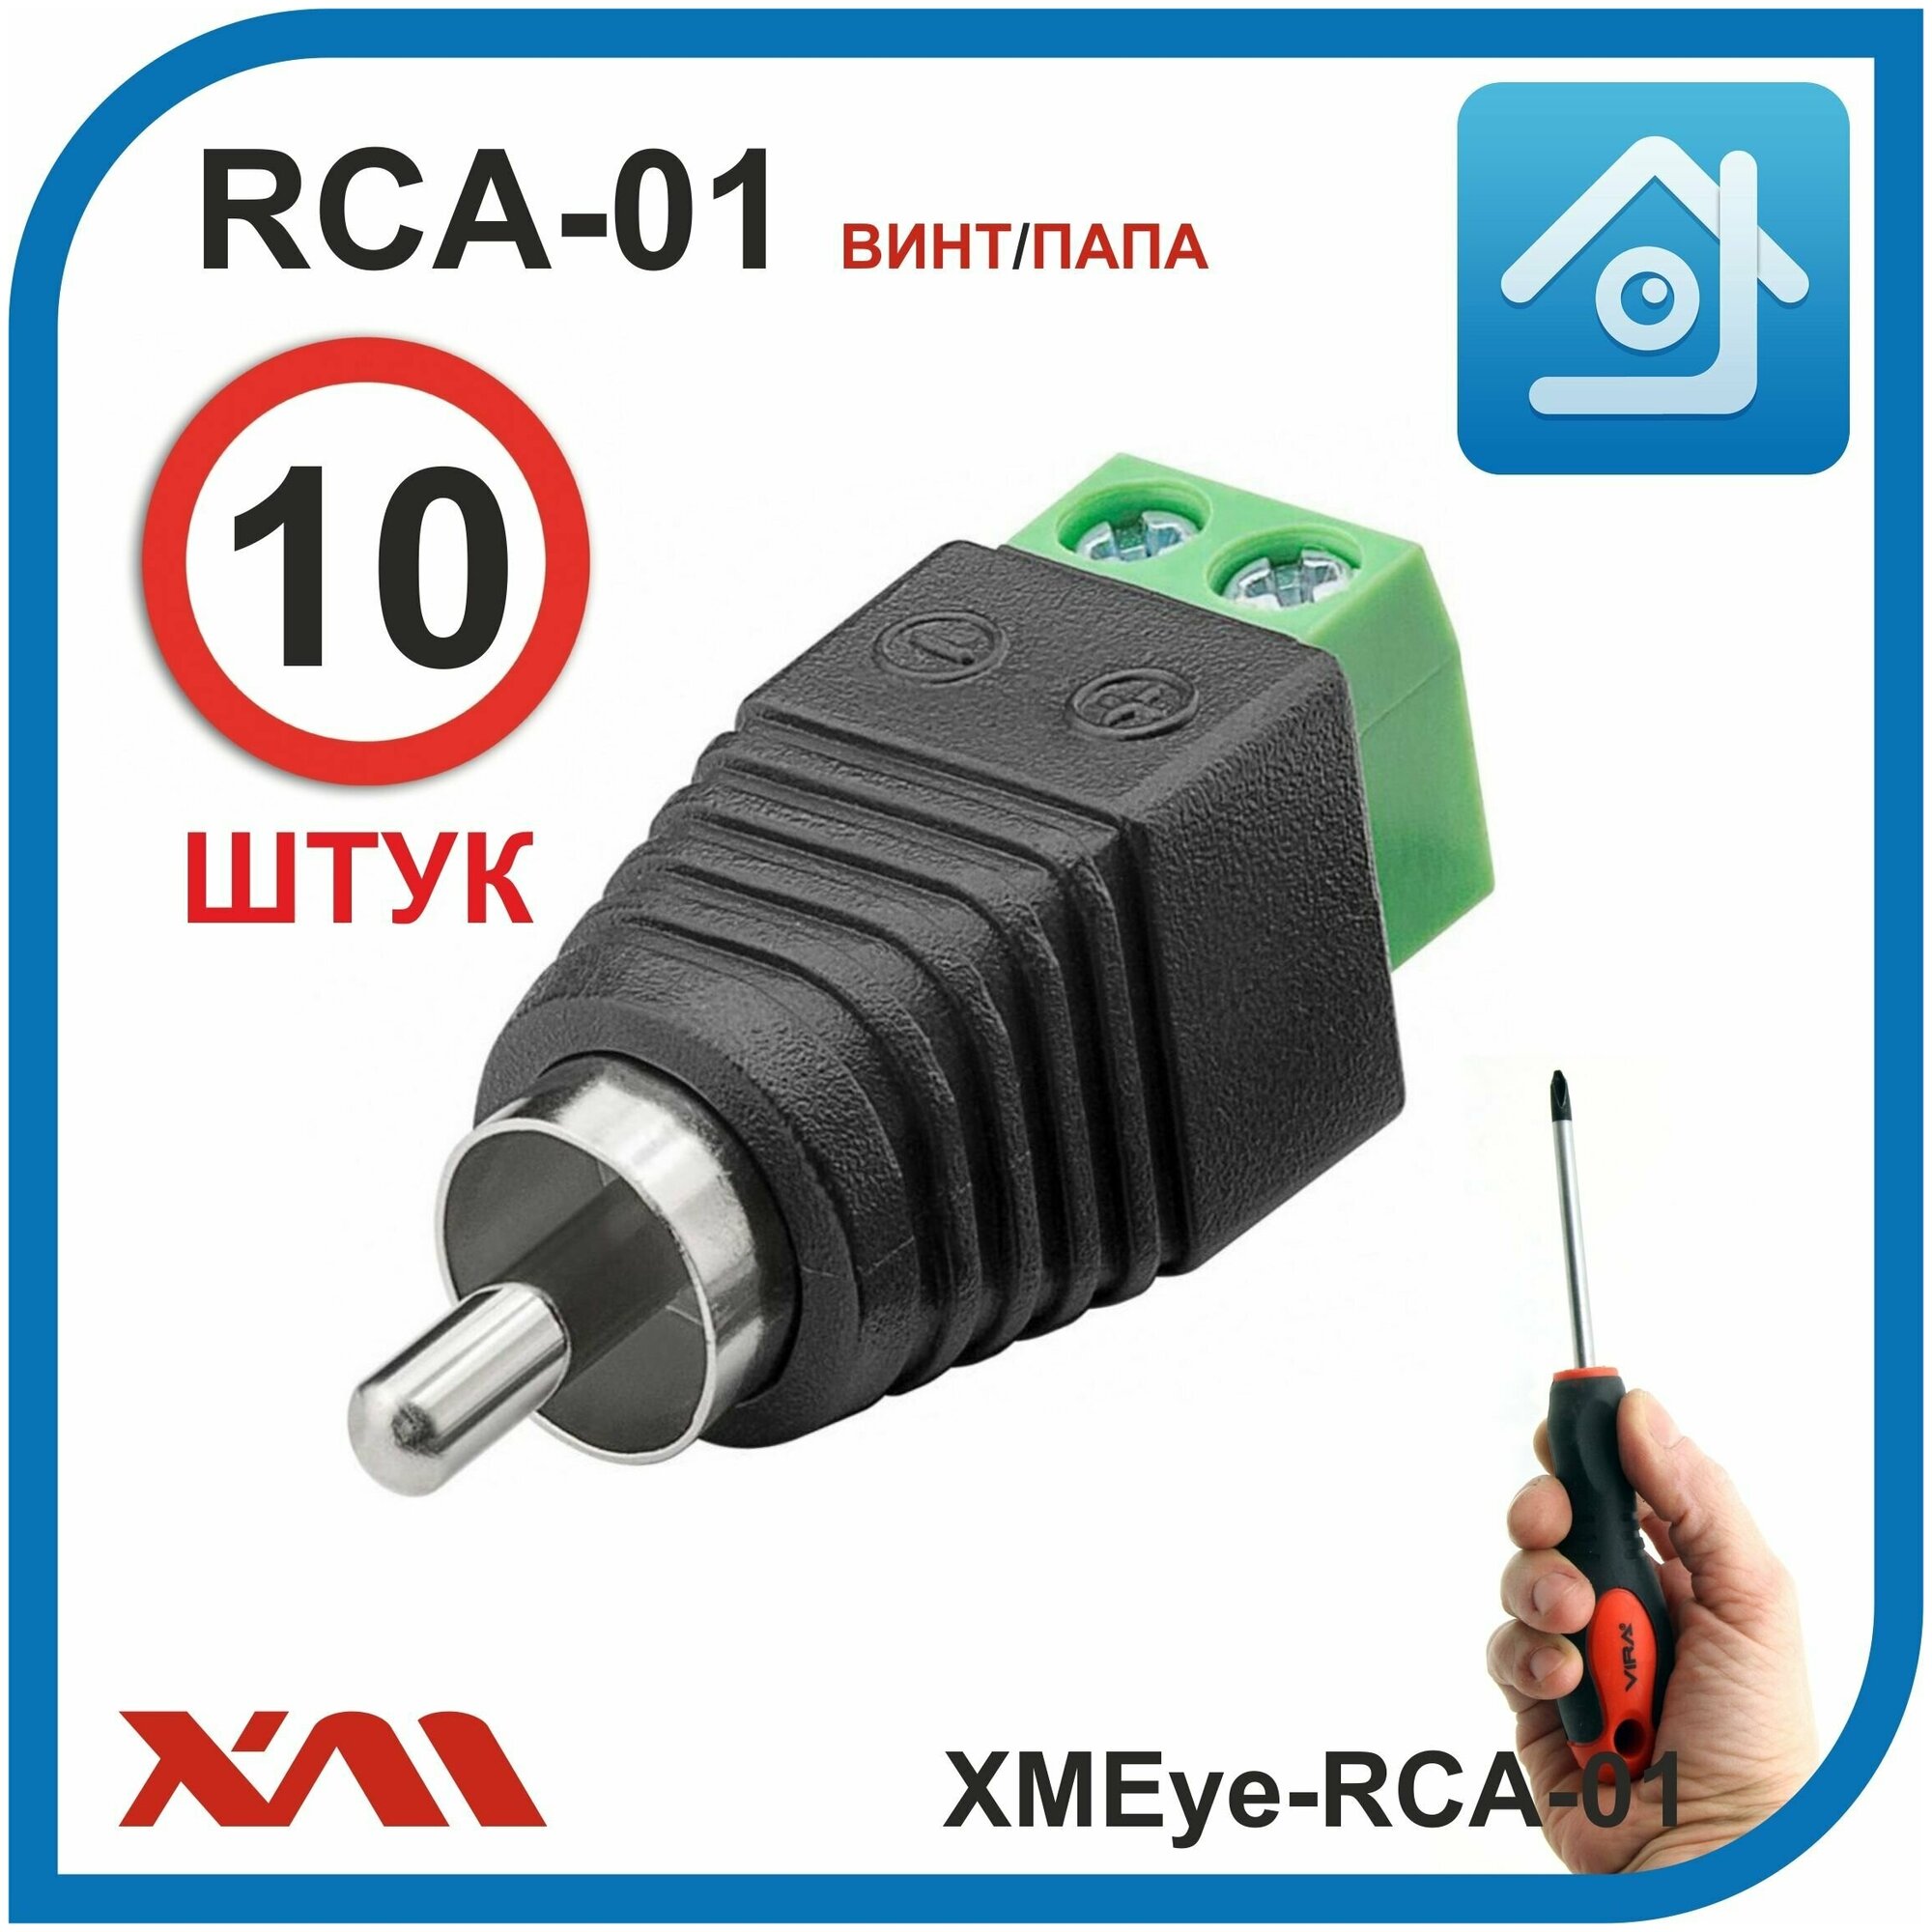 RCA разъём для аудио и видео сигнала в системах видеонаблюдения XMEye-RCA-01 комплект 10 шт.